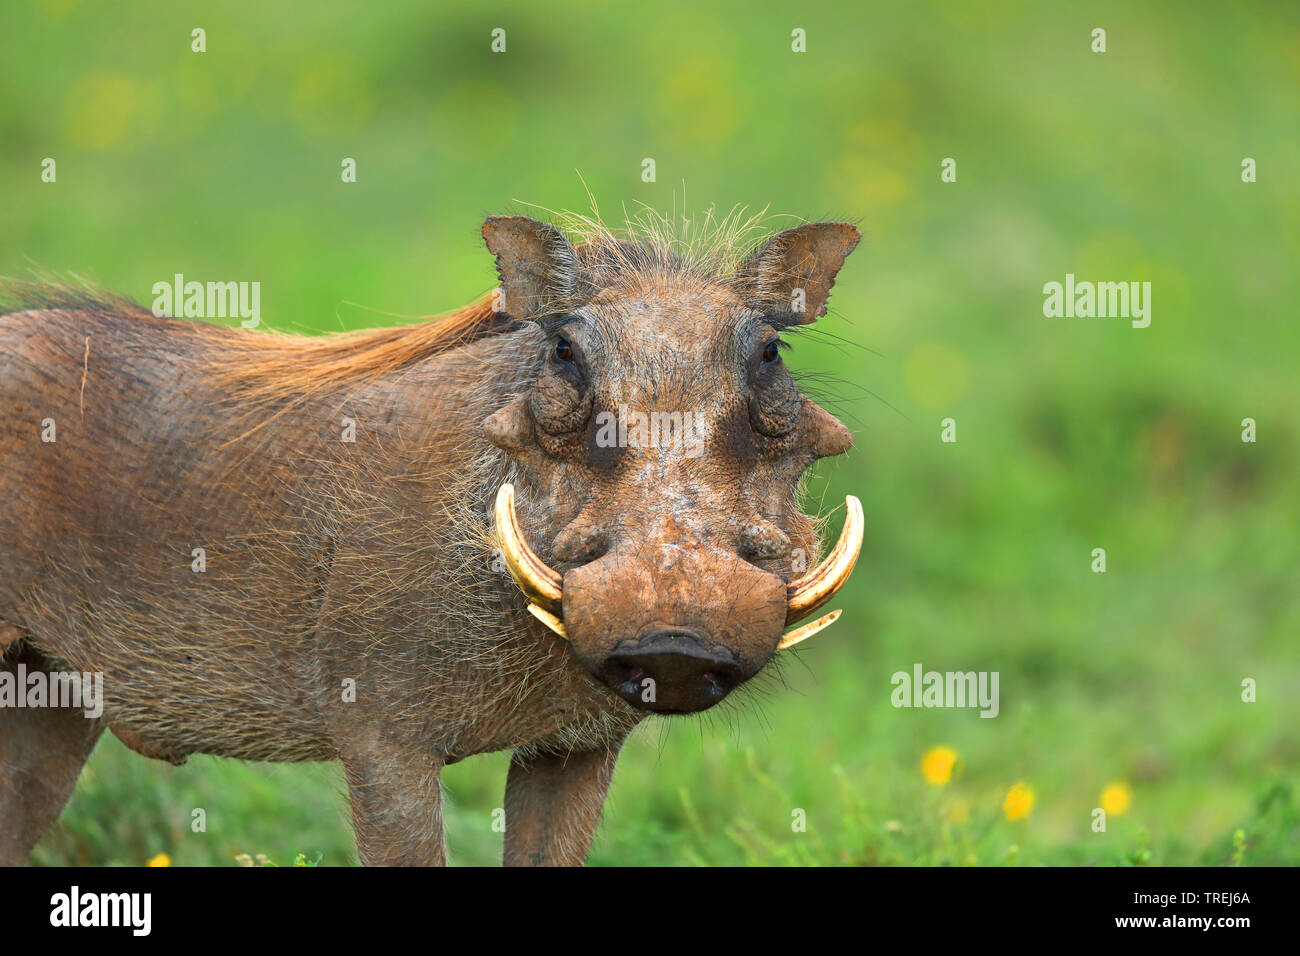 Gemeinsame Warzenschwein, savanna Warzenschwein (Phacochoerus africanus), steht im Grünland, Südafrika, Eastern Cape, Addo Elephant National Park Stockfoto